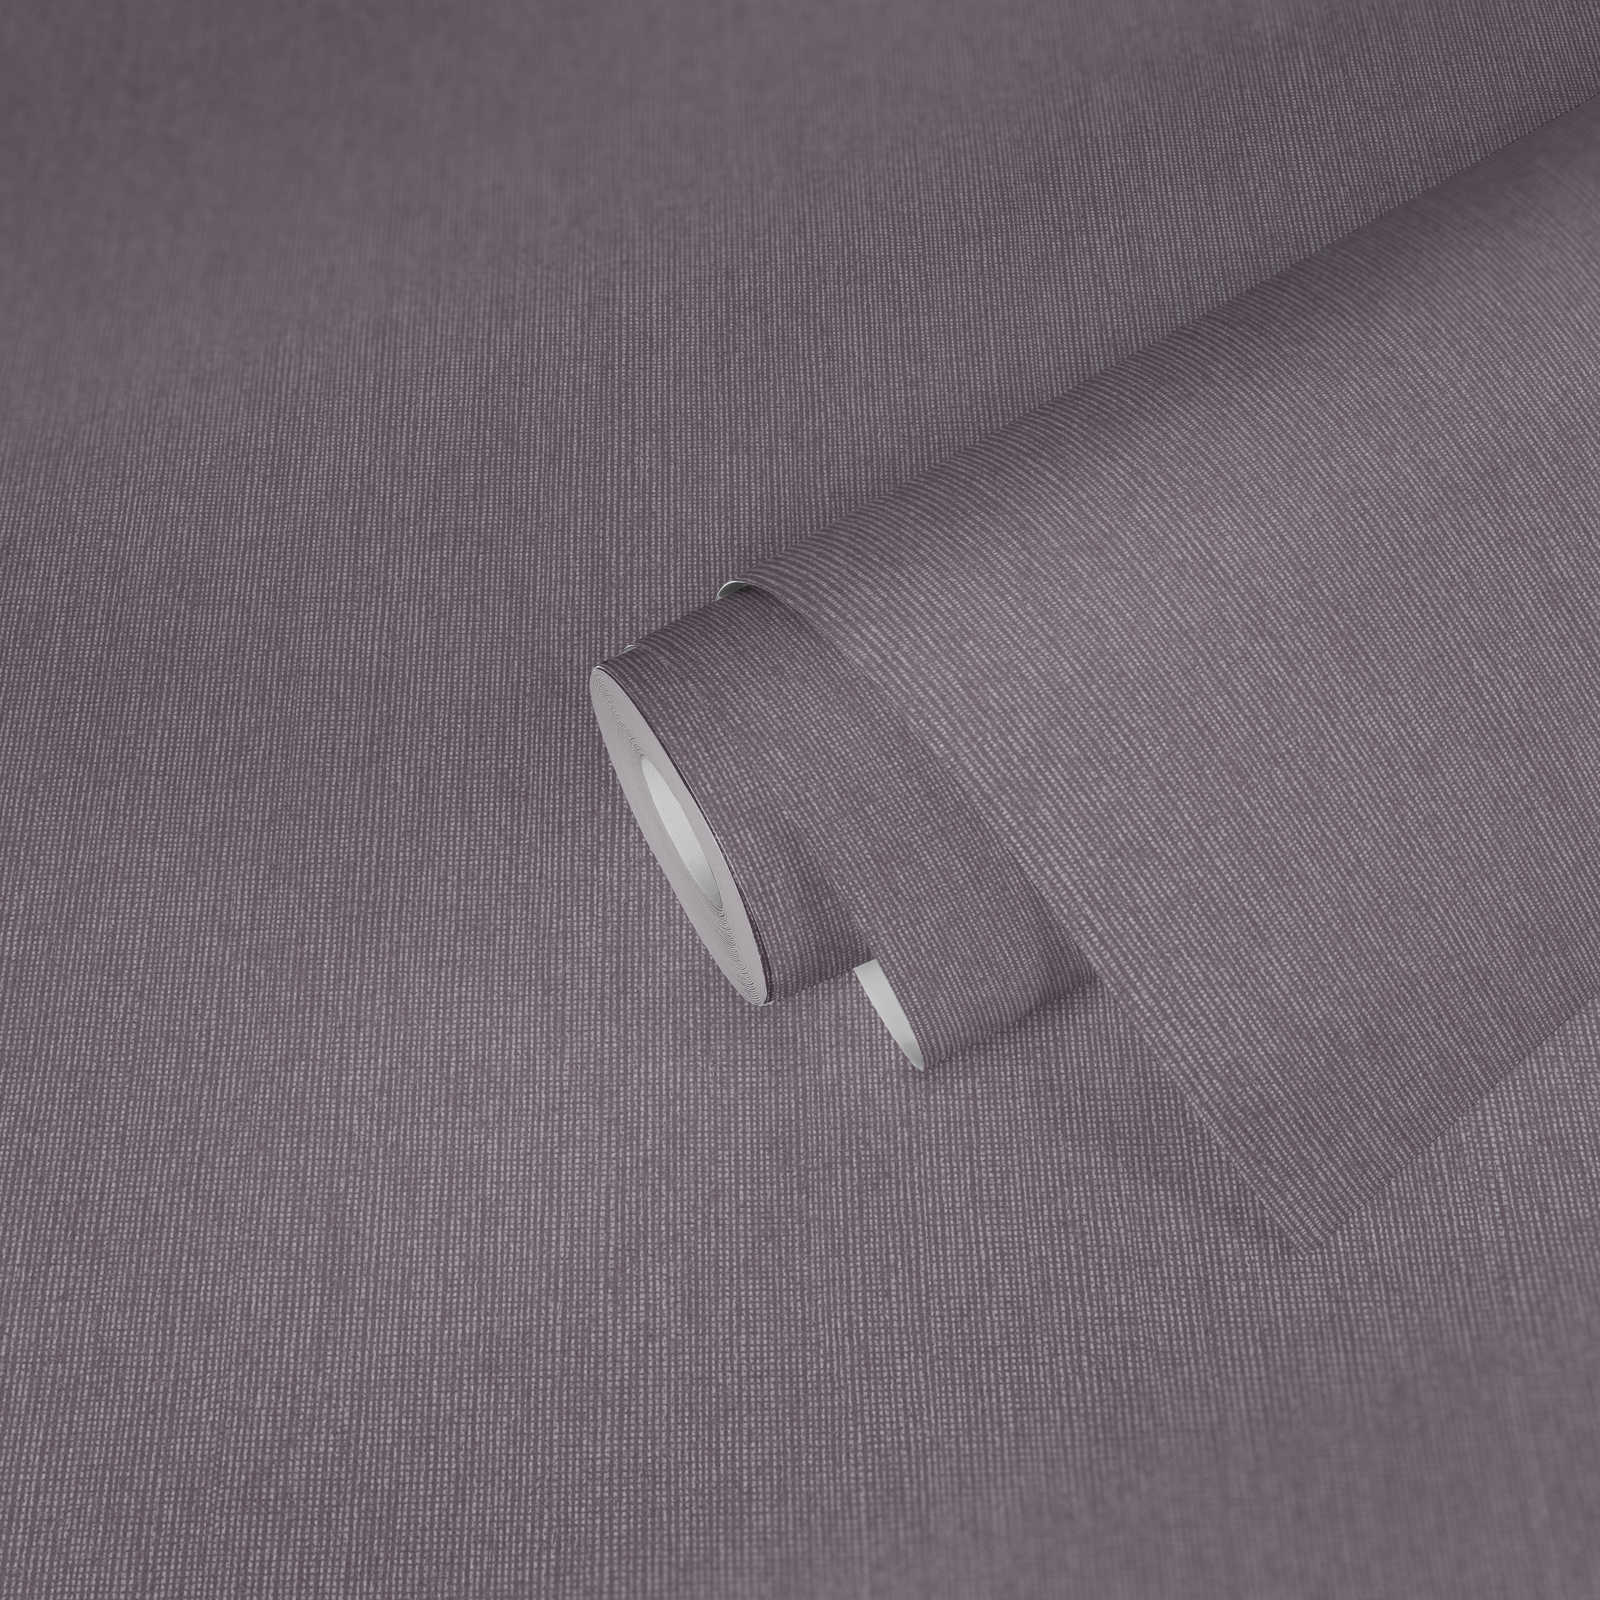             Glanz Tapete mit Textilstruktur & Schimmer Effekt – Lila, Grau
        